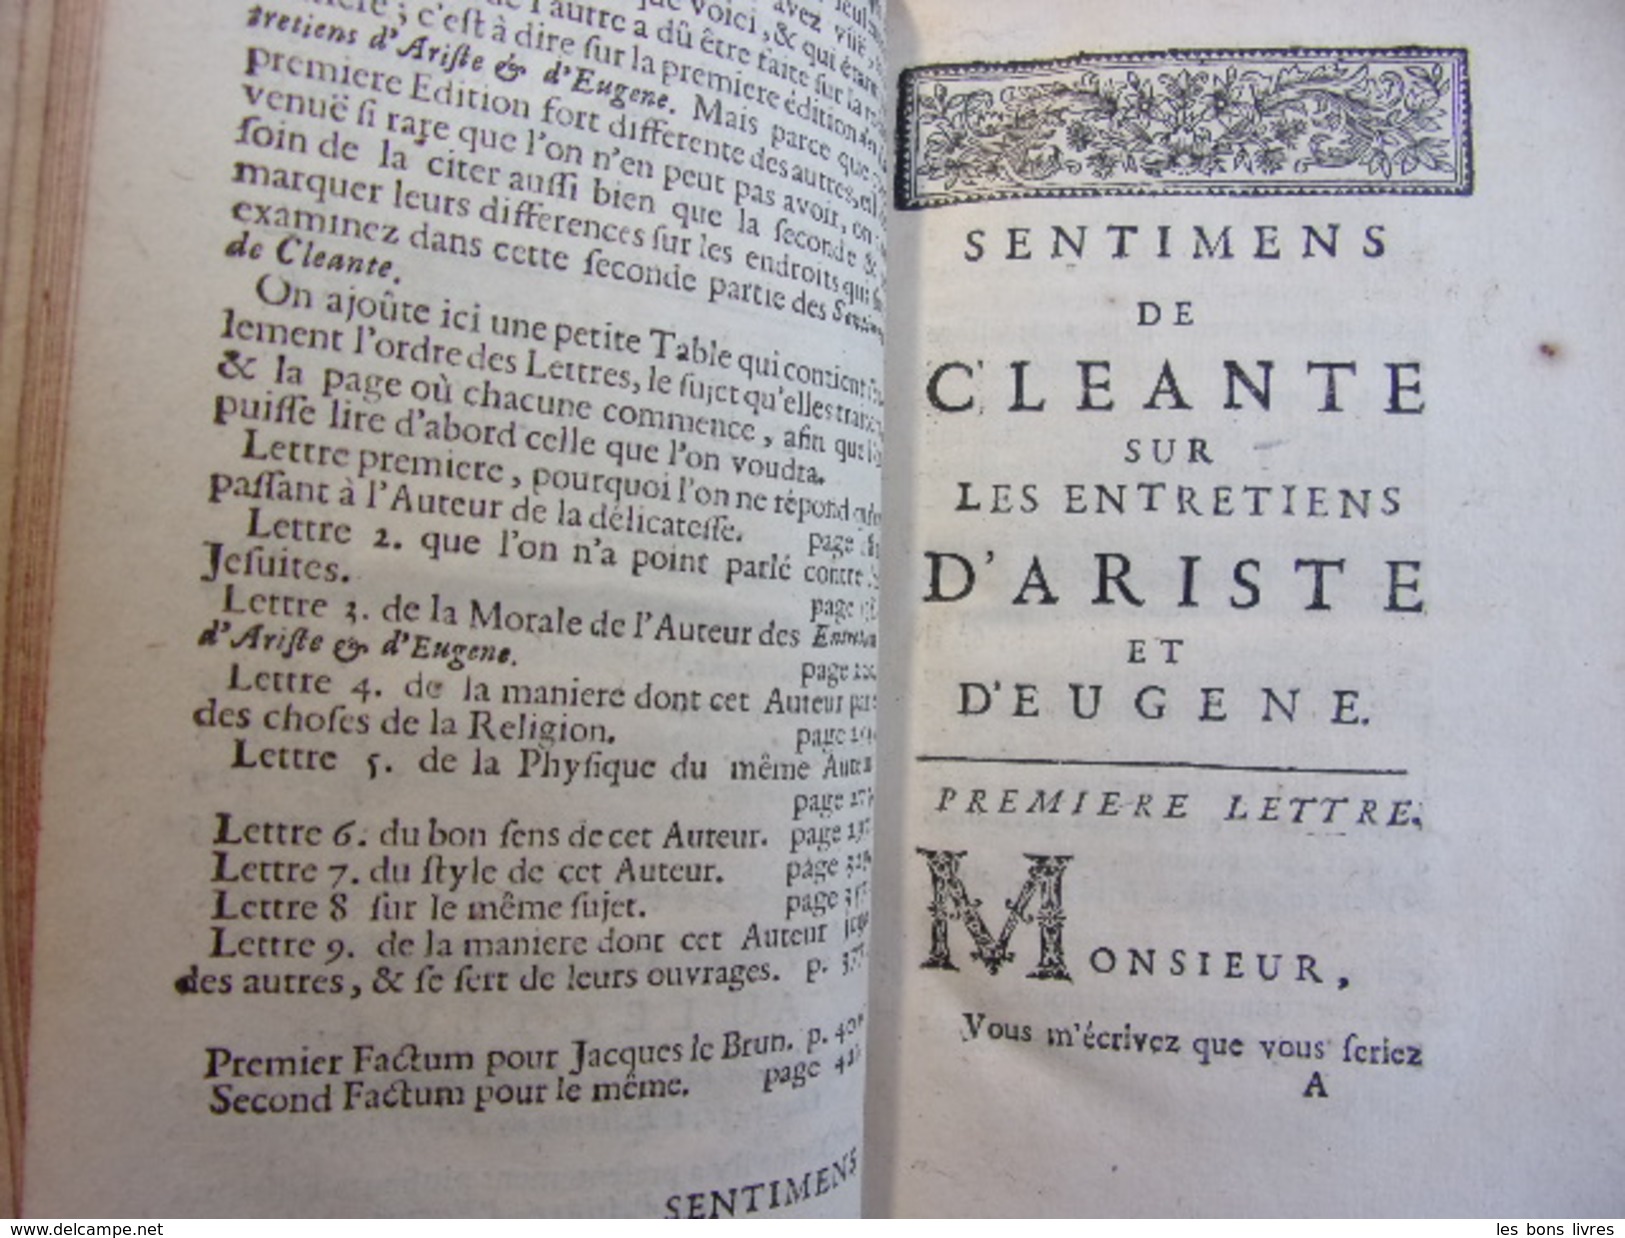 SENTIMENS DE CLEANTE SUR LES ENTRETIENS D'ARISTIDE ET D’EUGÈNE Barbier D'Aucour - Before 18th Century